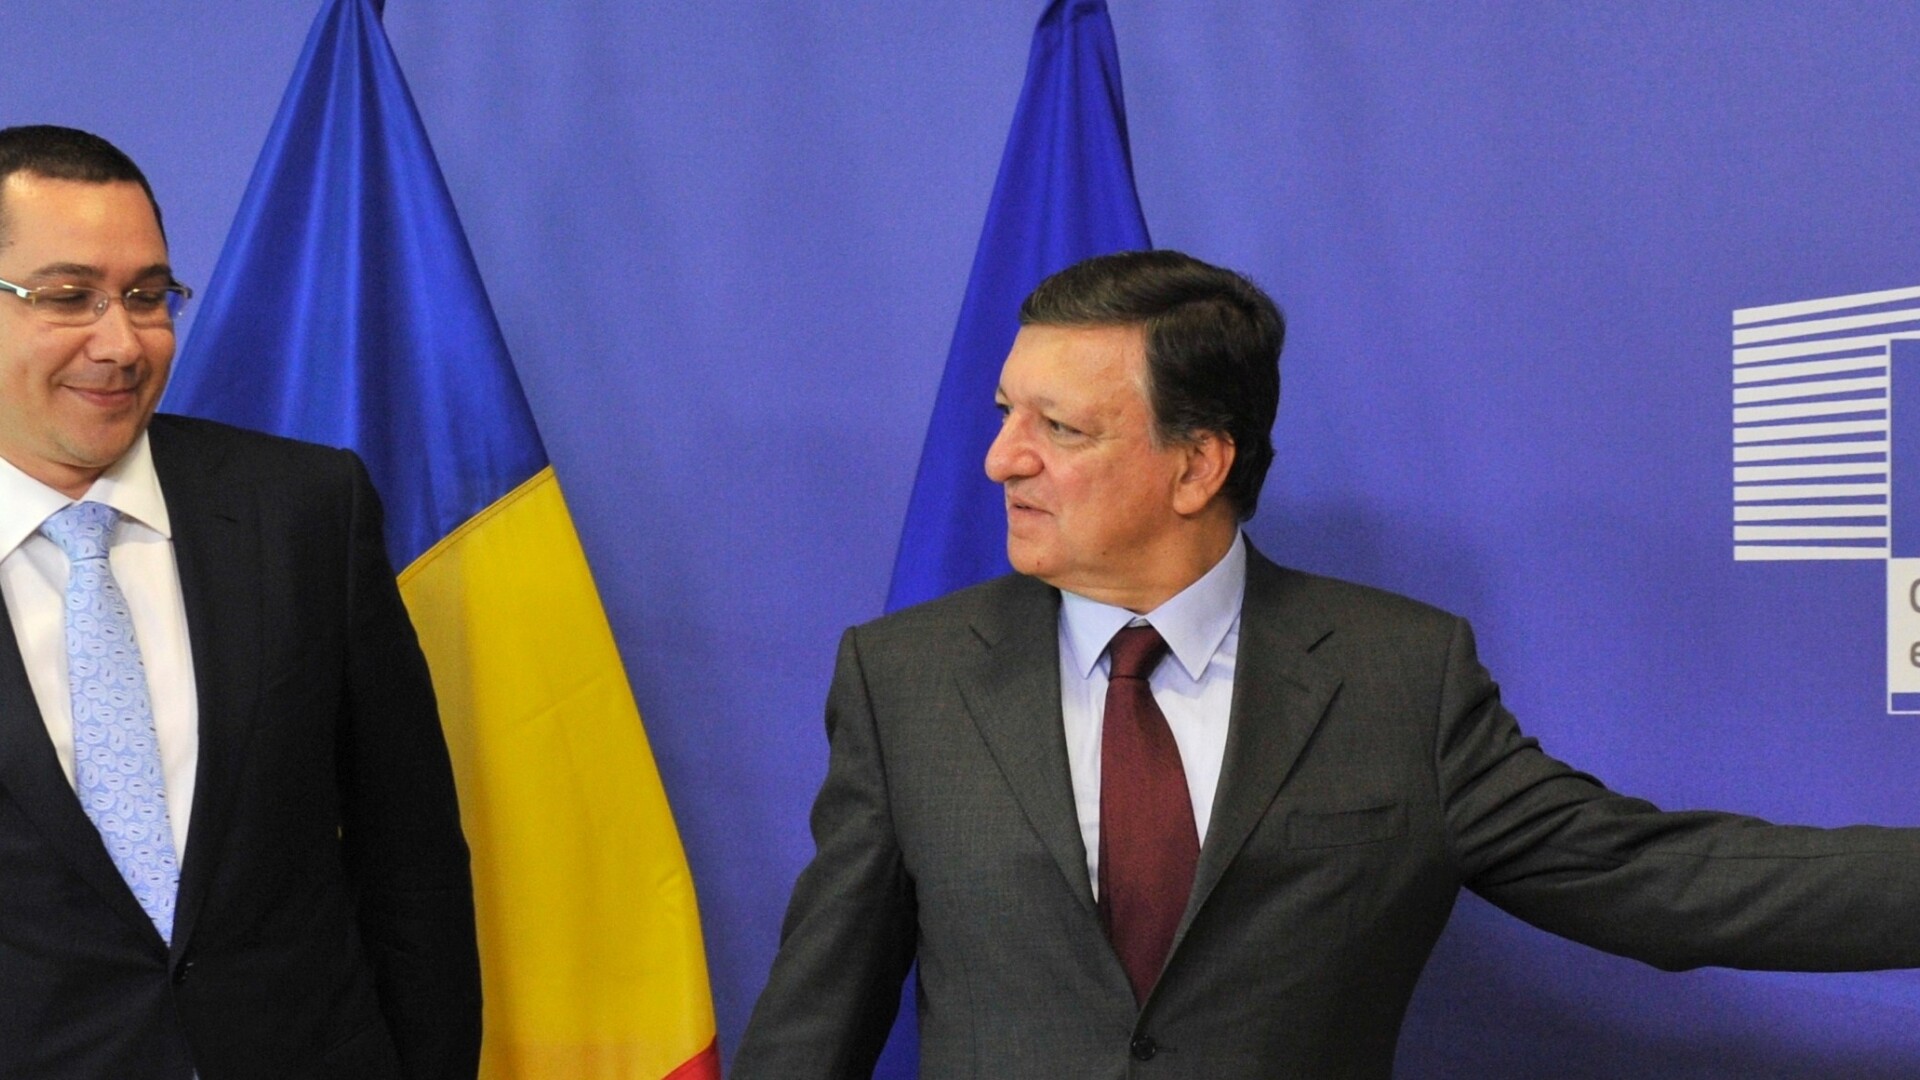 Victor Ponta, Jose Manuel Barroso